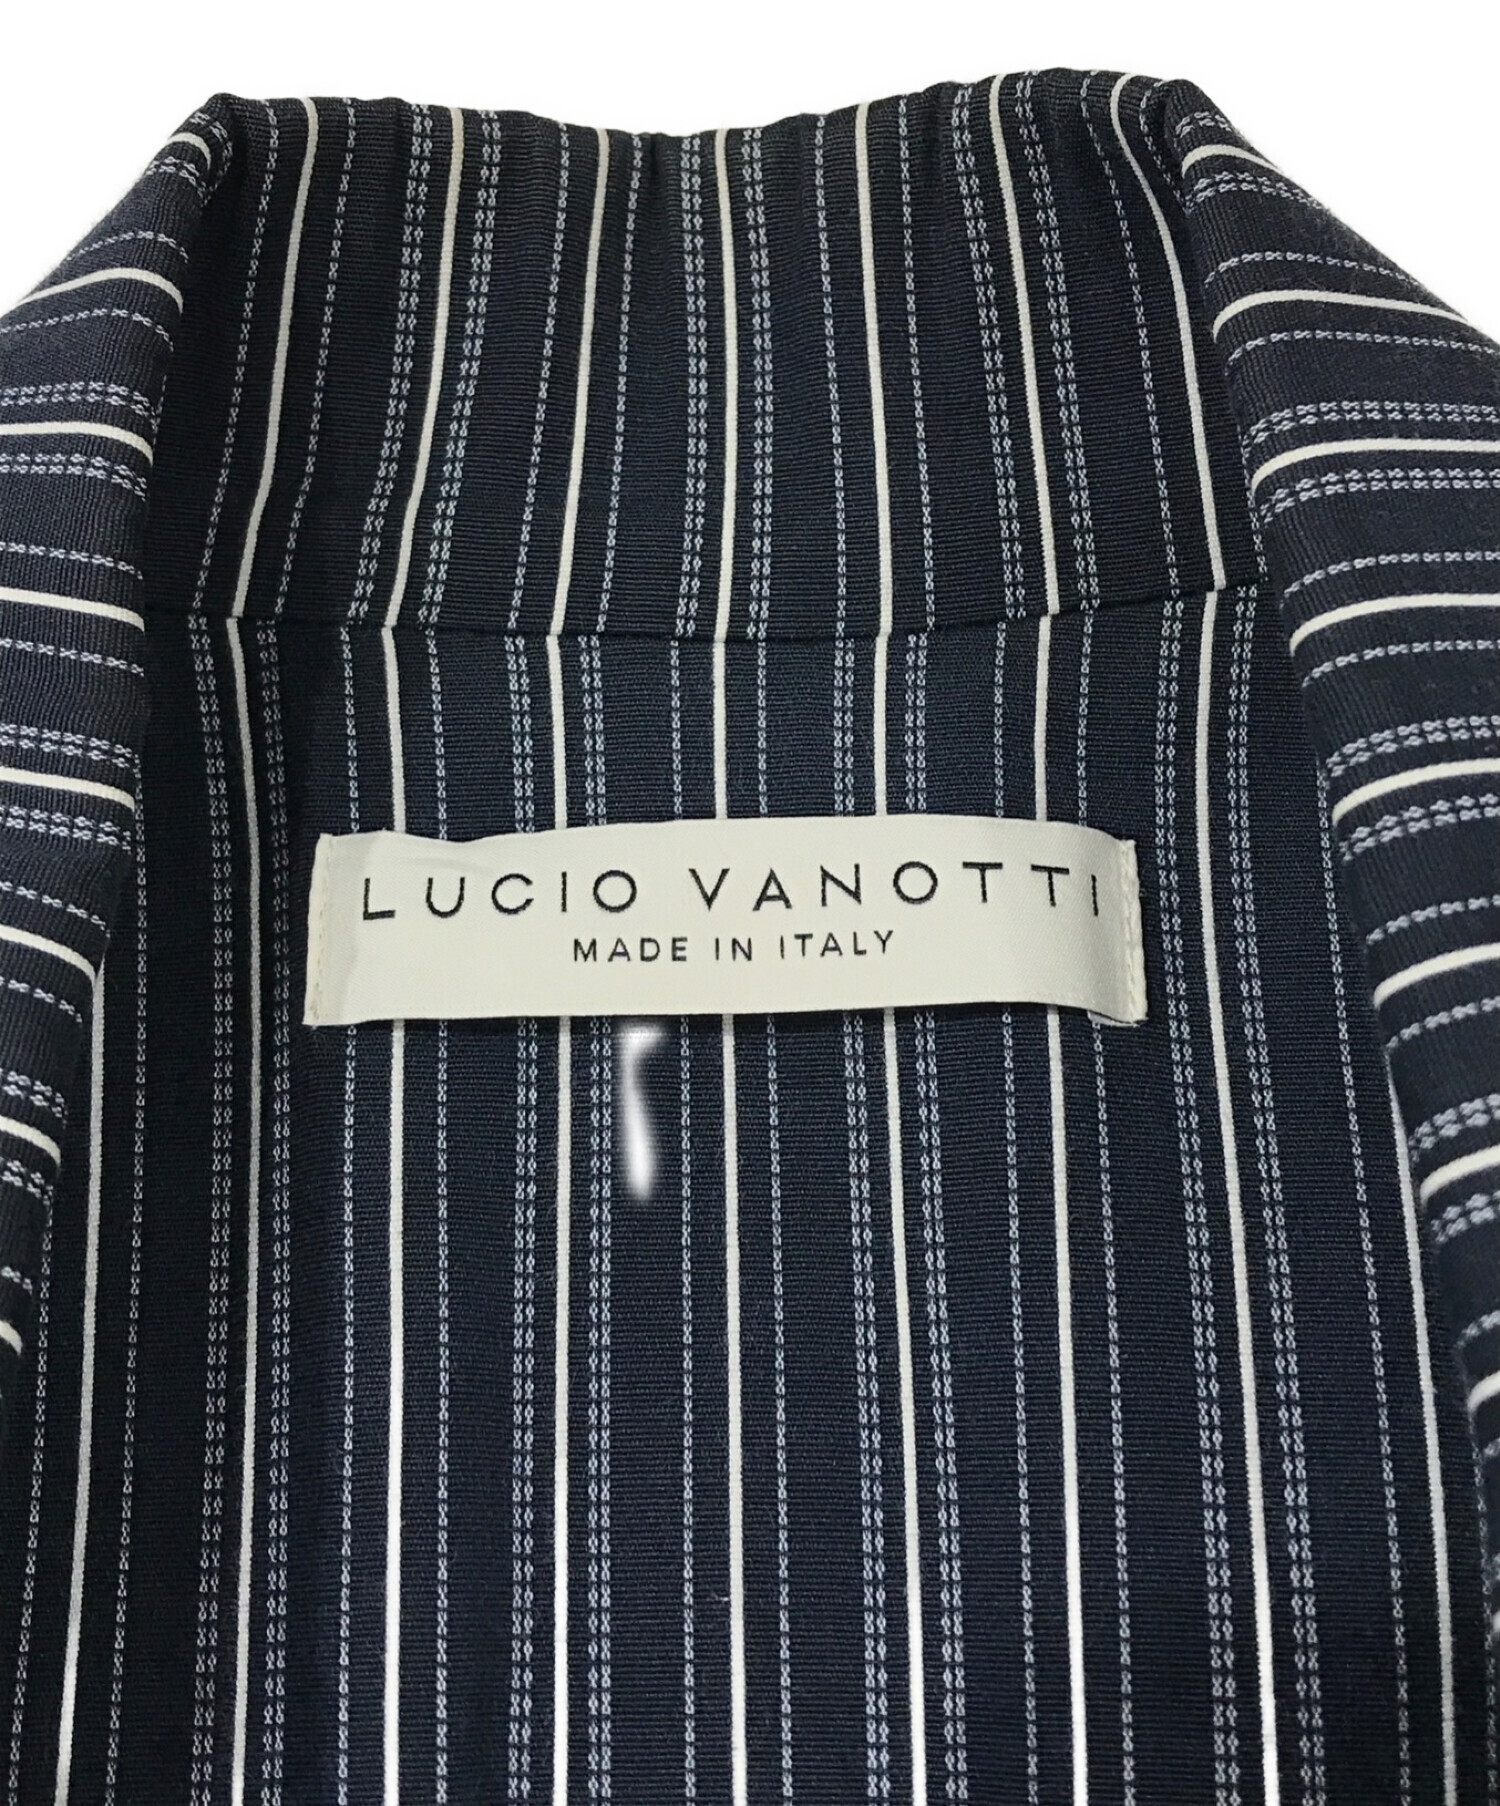 LUCIO VANOTTI (ルーチョ バノッティ) ロングコート ネイビー サイズ:3